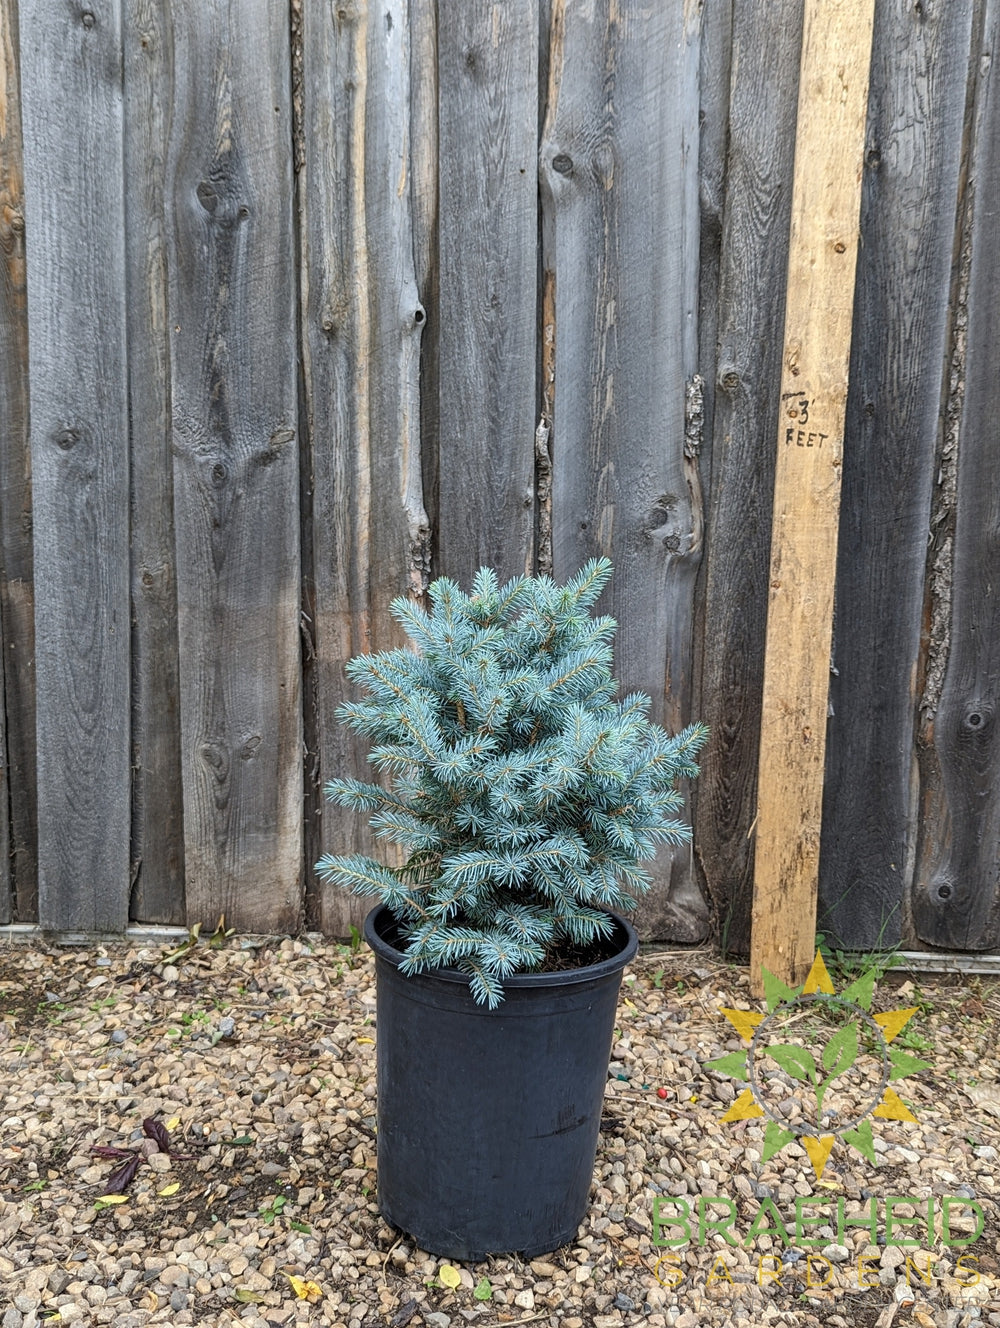 Sester's Dwarf Blue Spruce